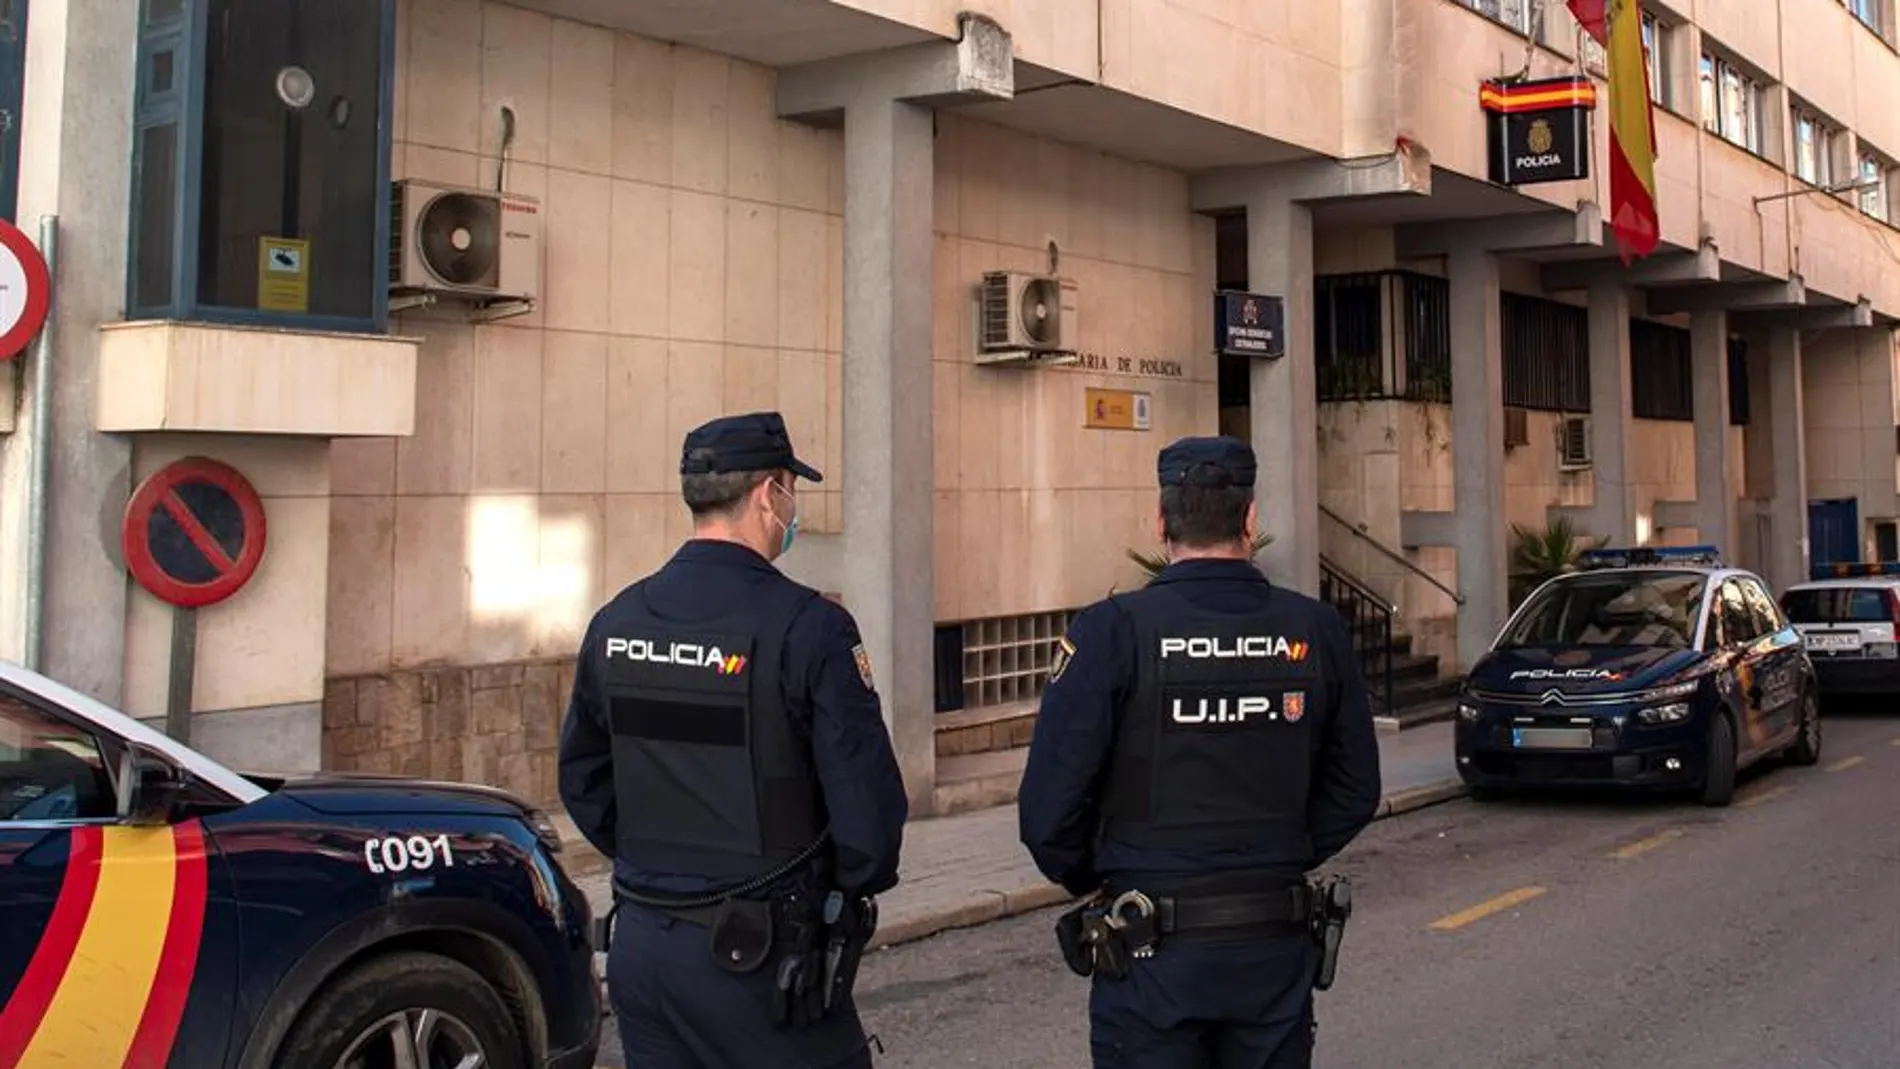 Policías montan guardia a las puertas de la comisaría de Linares